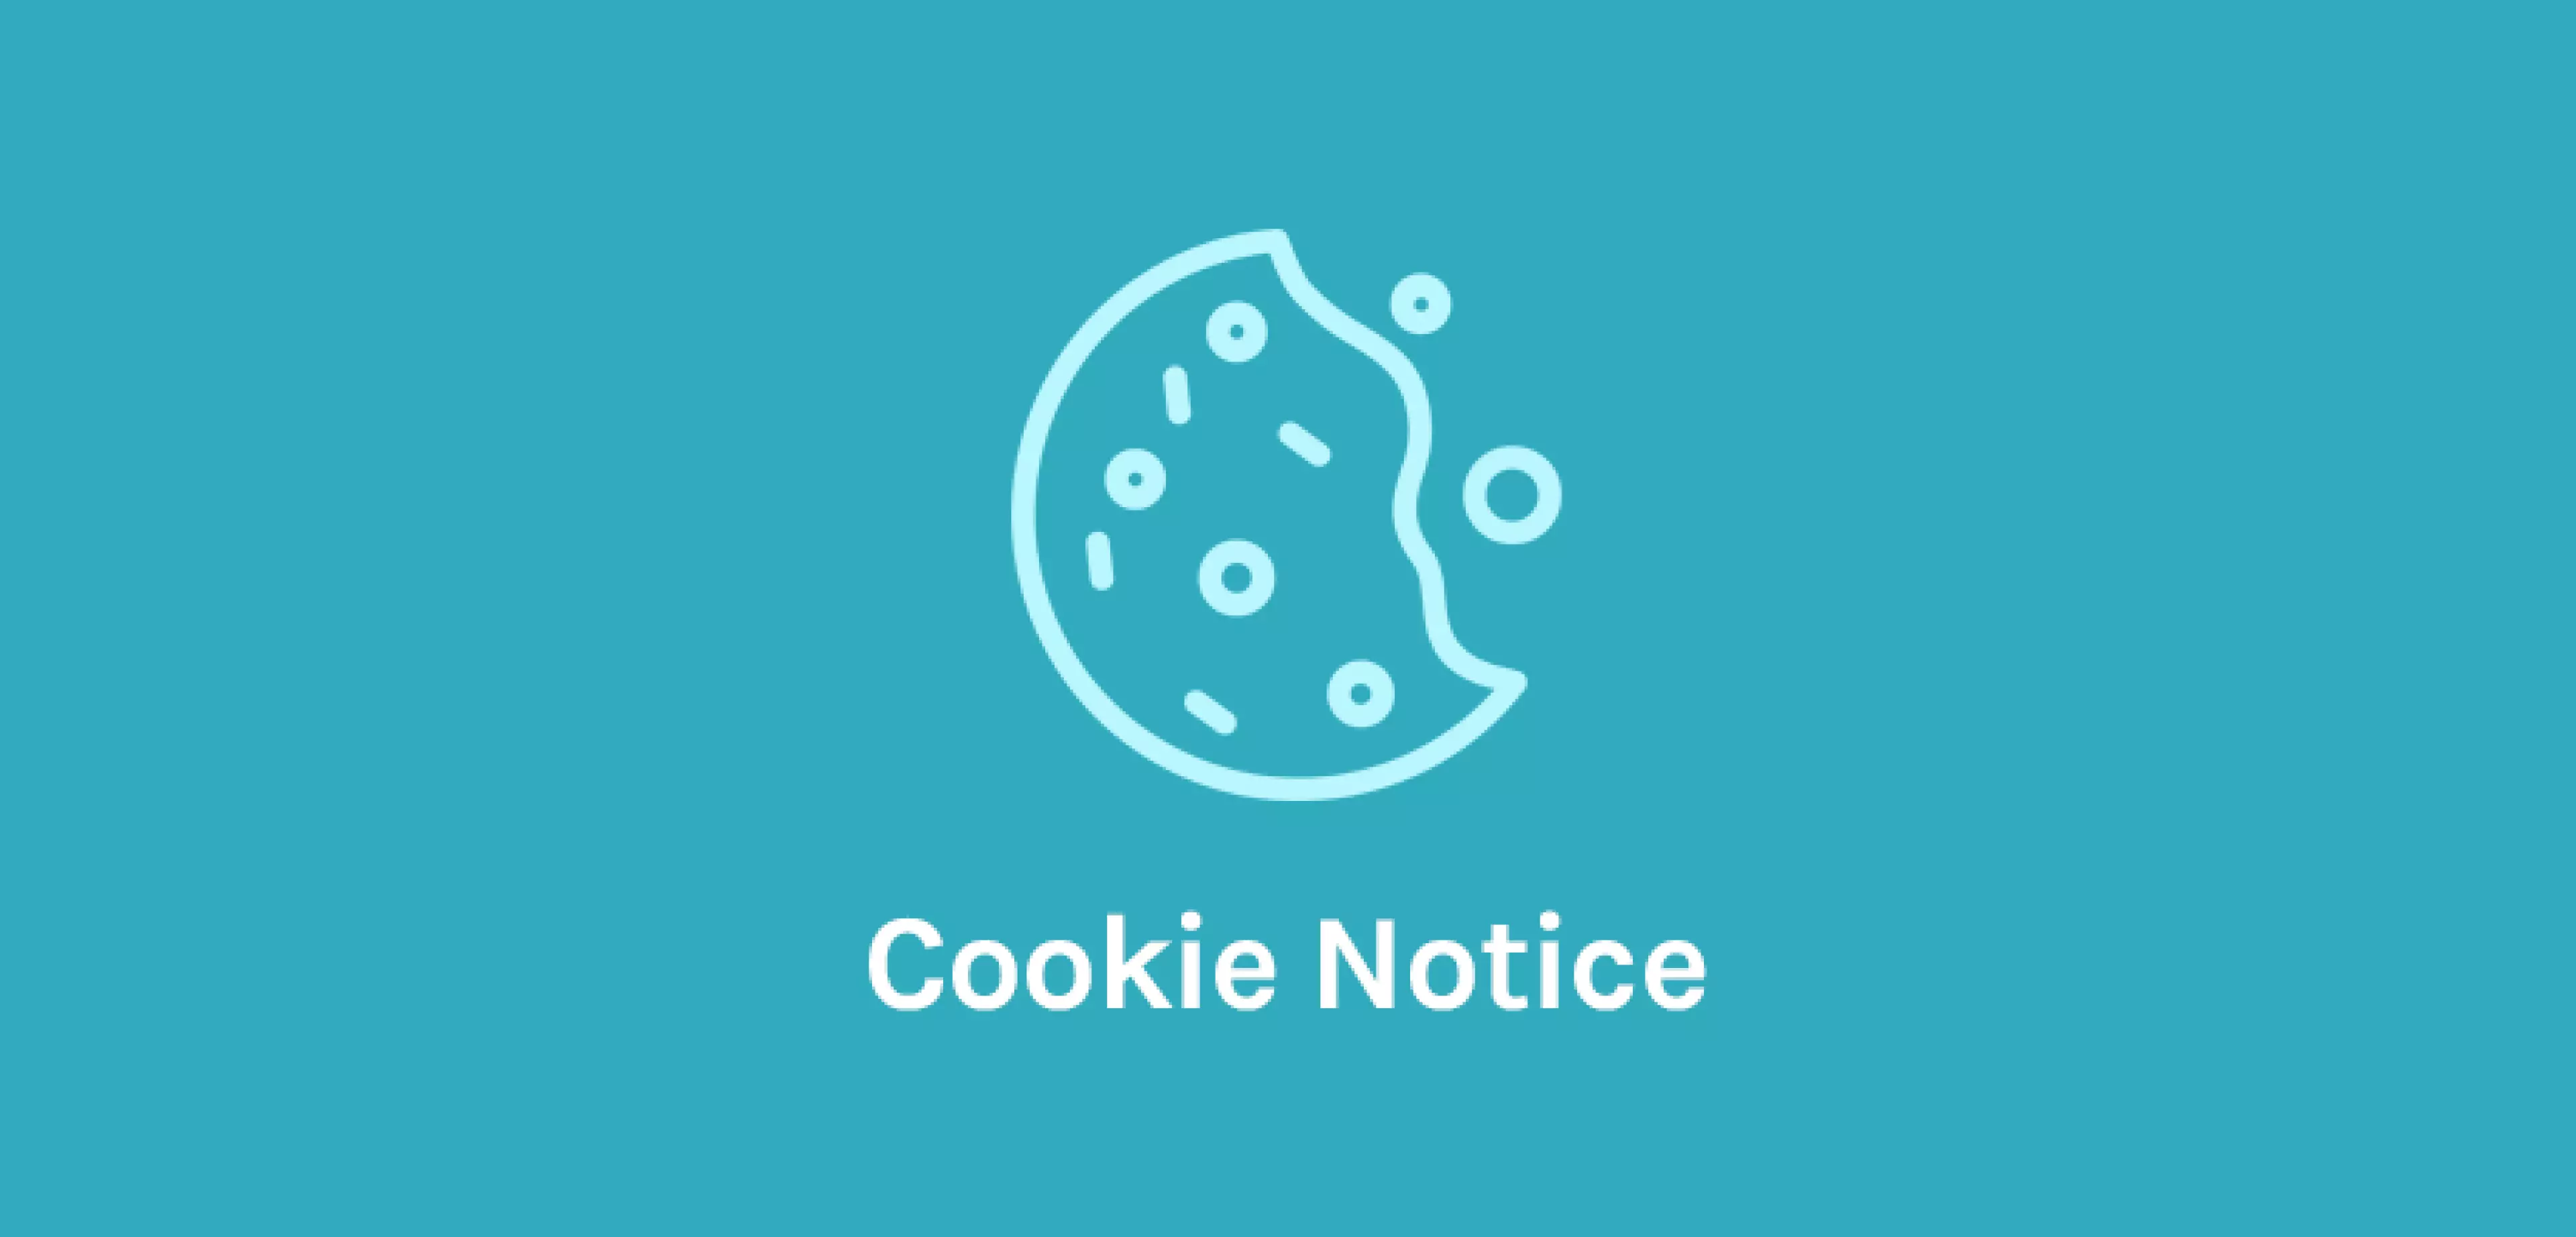 Oceanwp - Cookie Notice